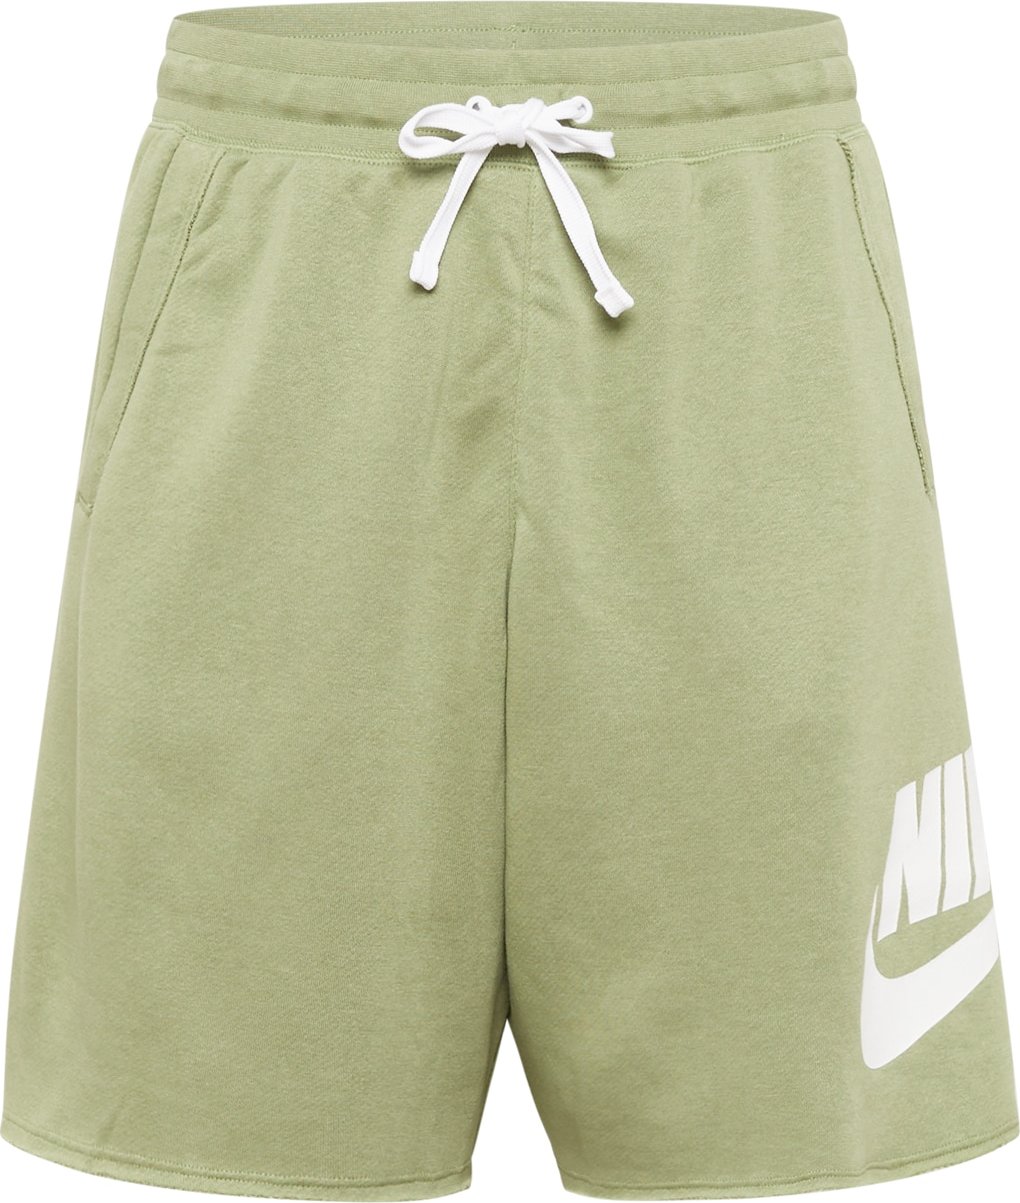 Kalhoty Nike Sportswear olivová / bílá